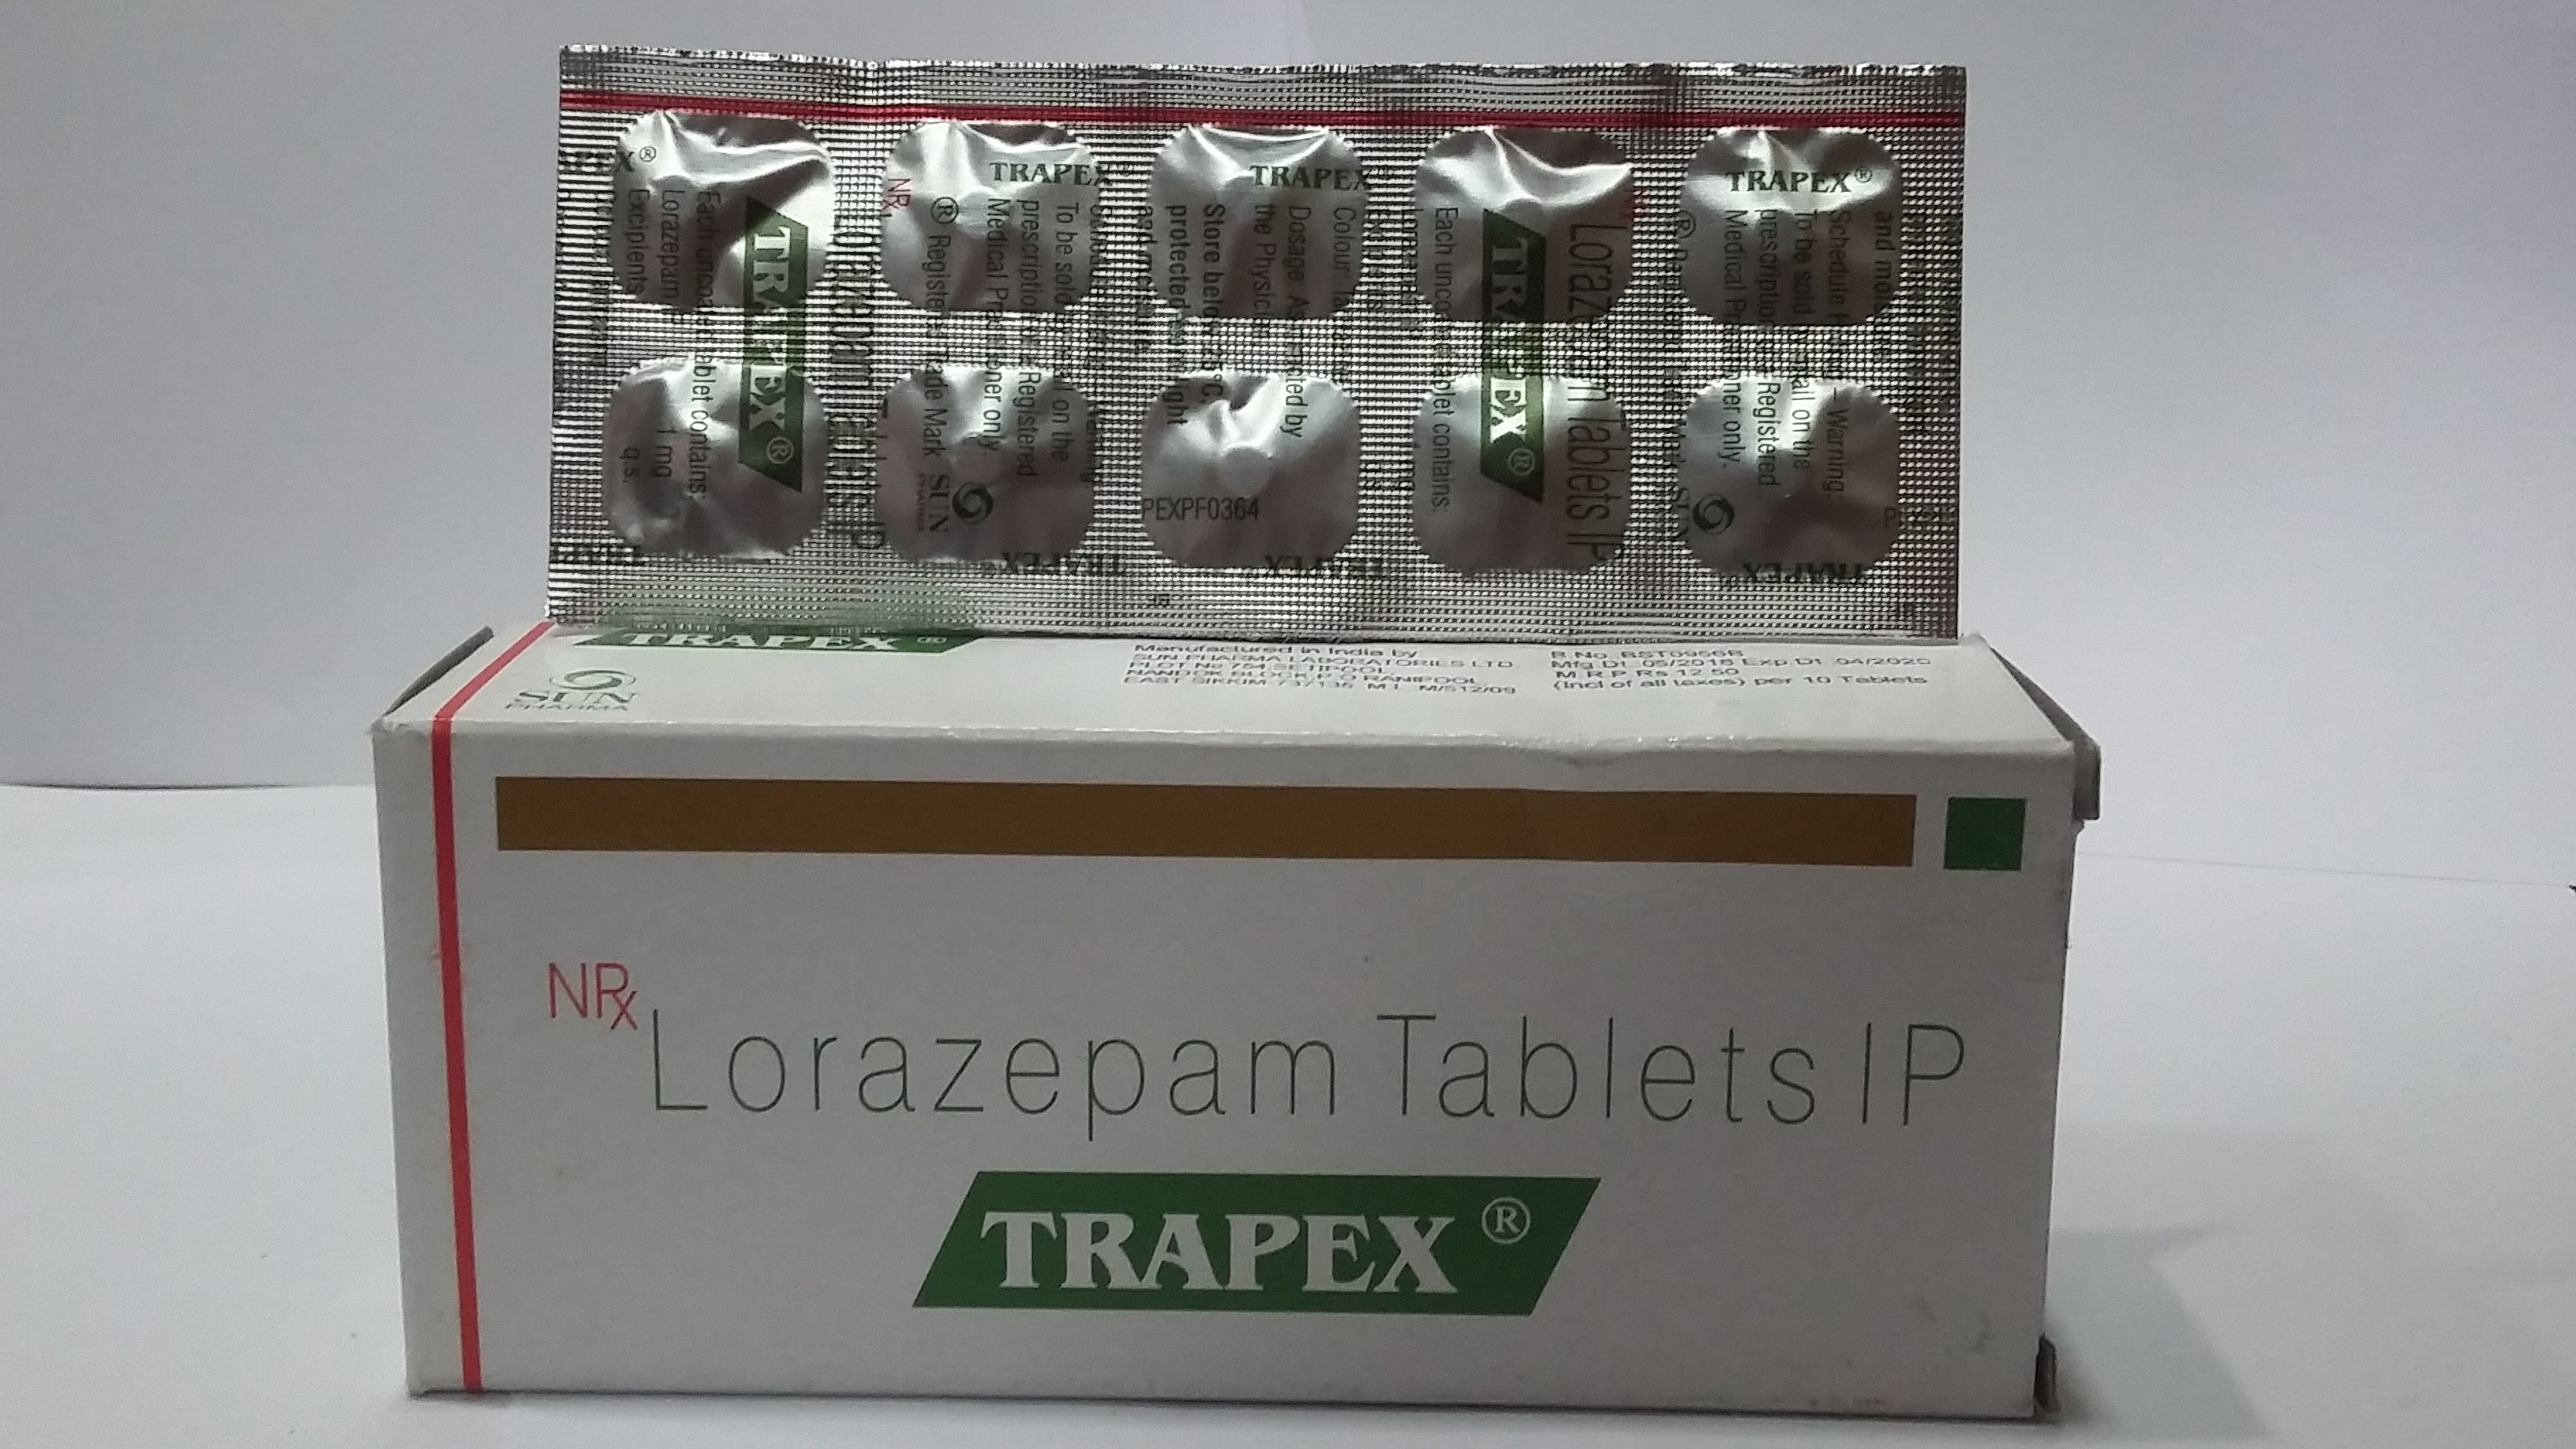 Trapex-1mg(l.m.)